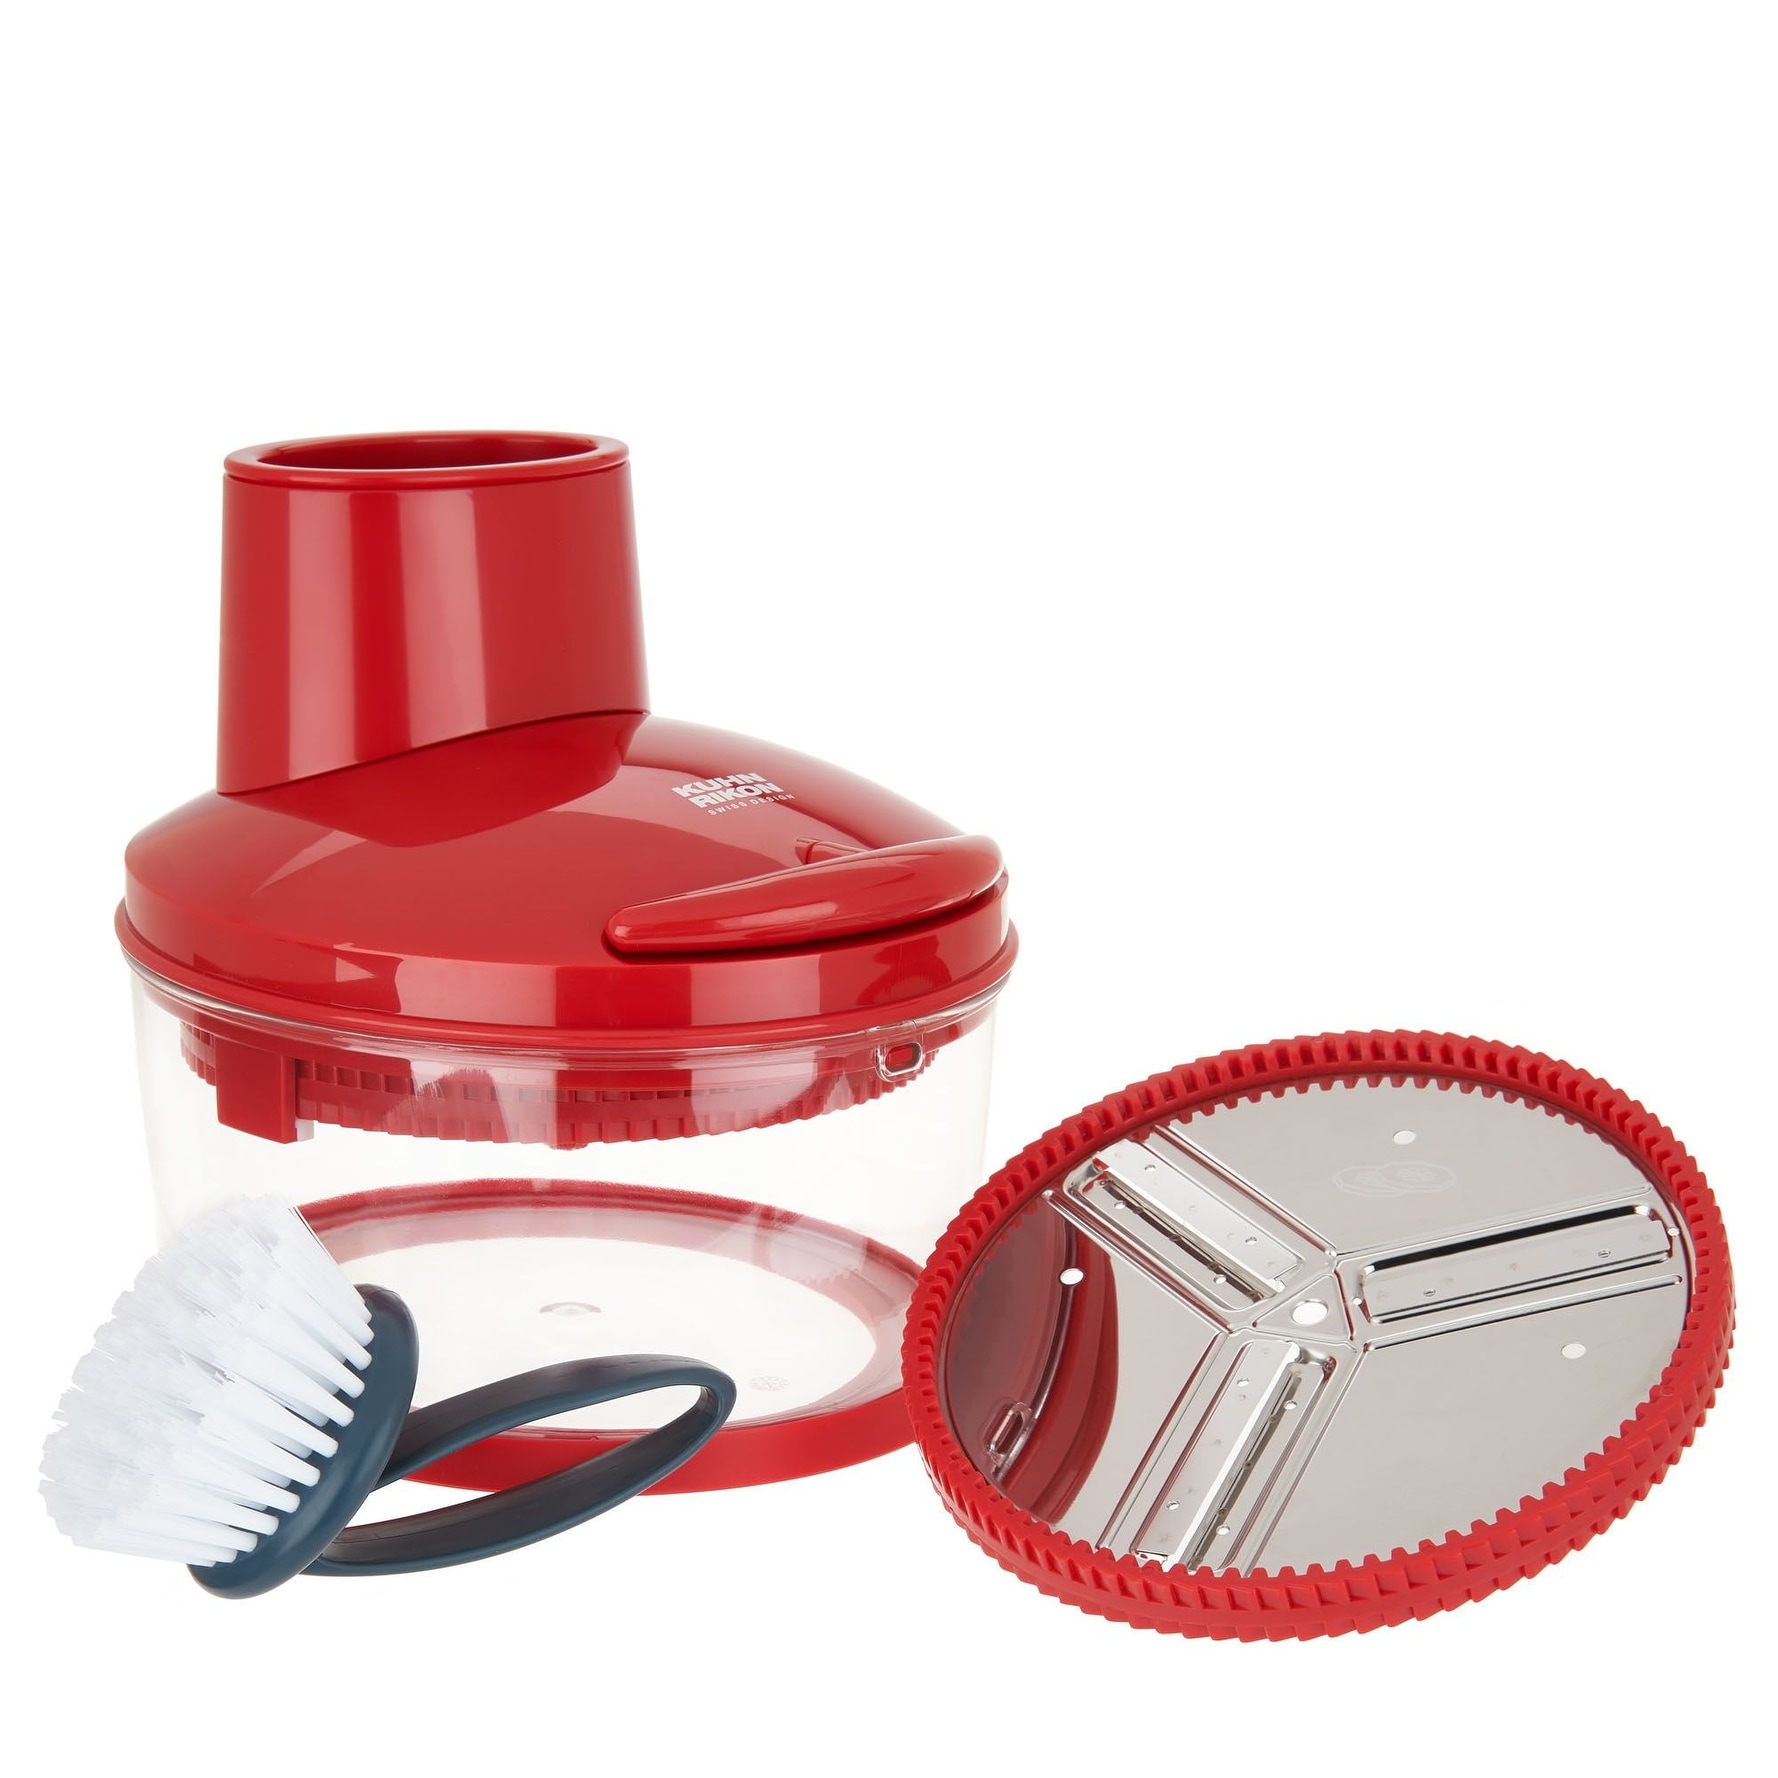 Kuhn Rikon 4-Cup Easy Cut Food Slicer & Grater Model - Bed Bath